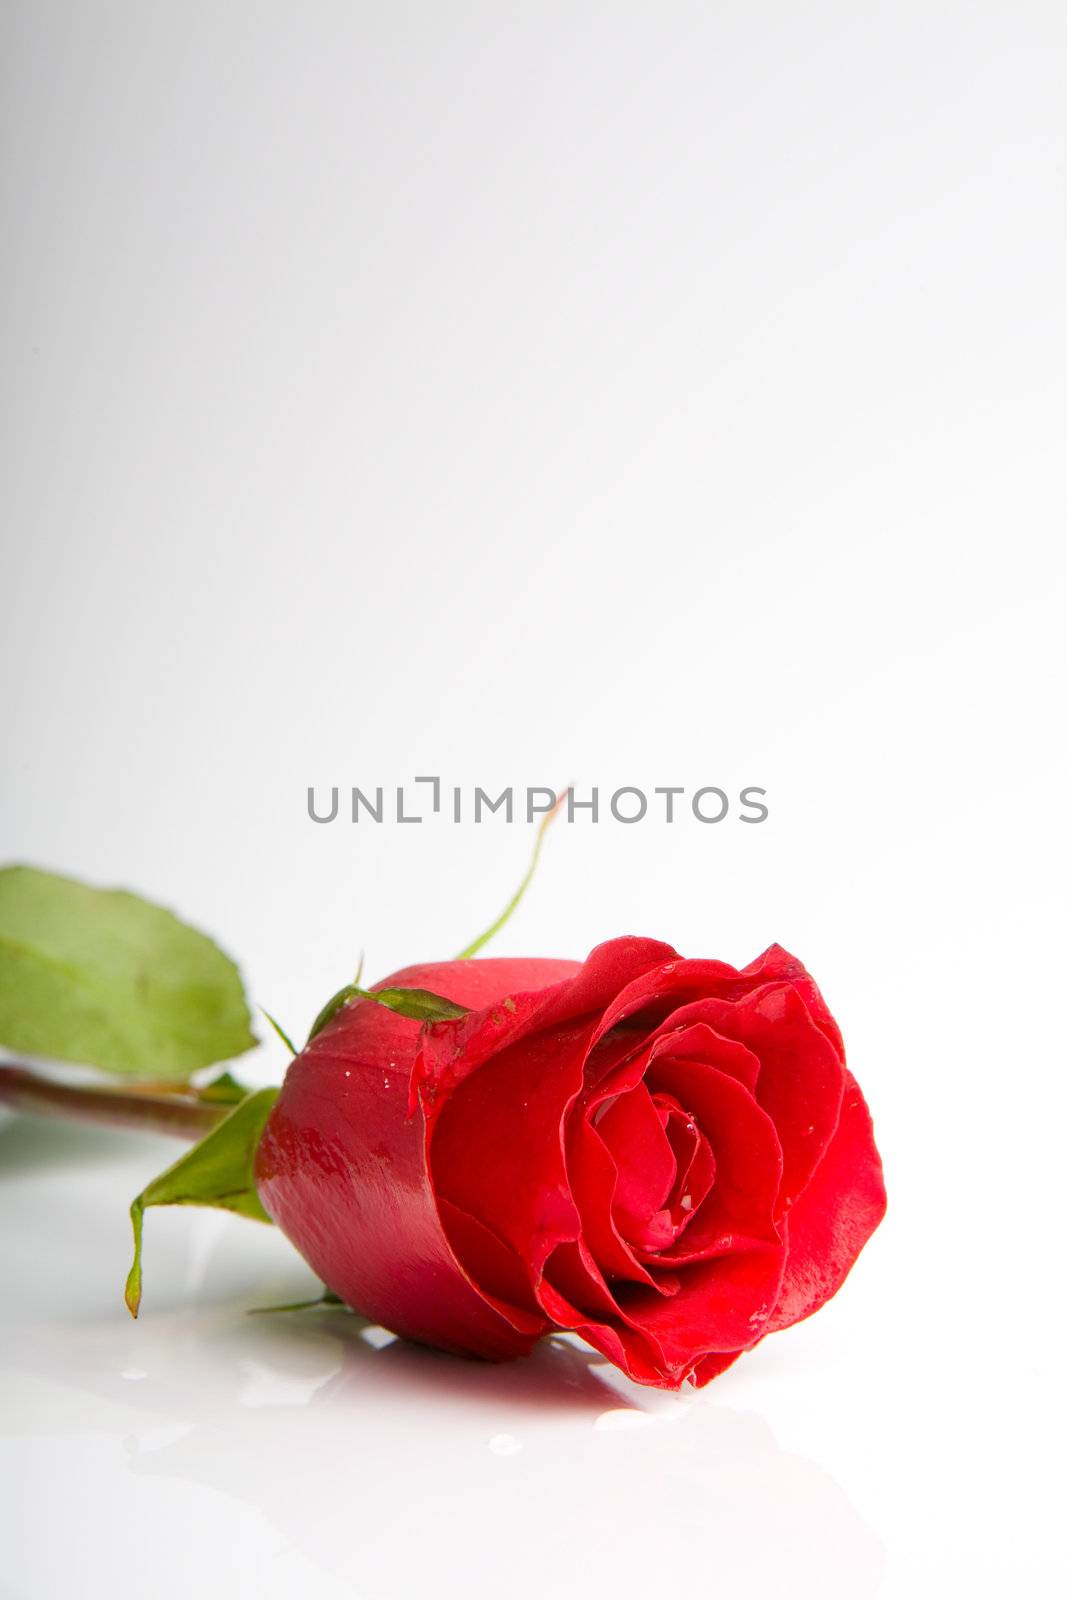 flower of love by vsurkov